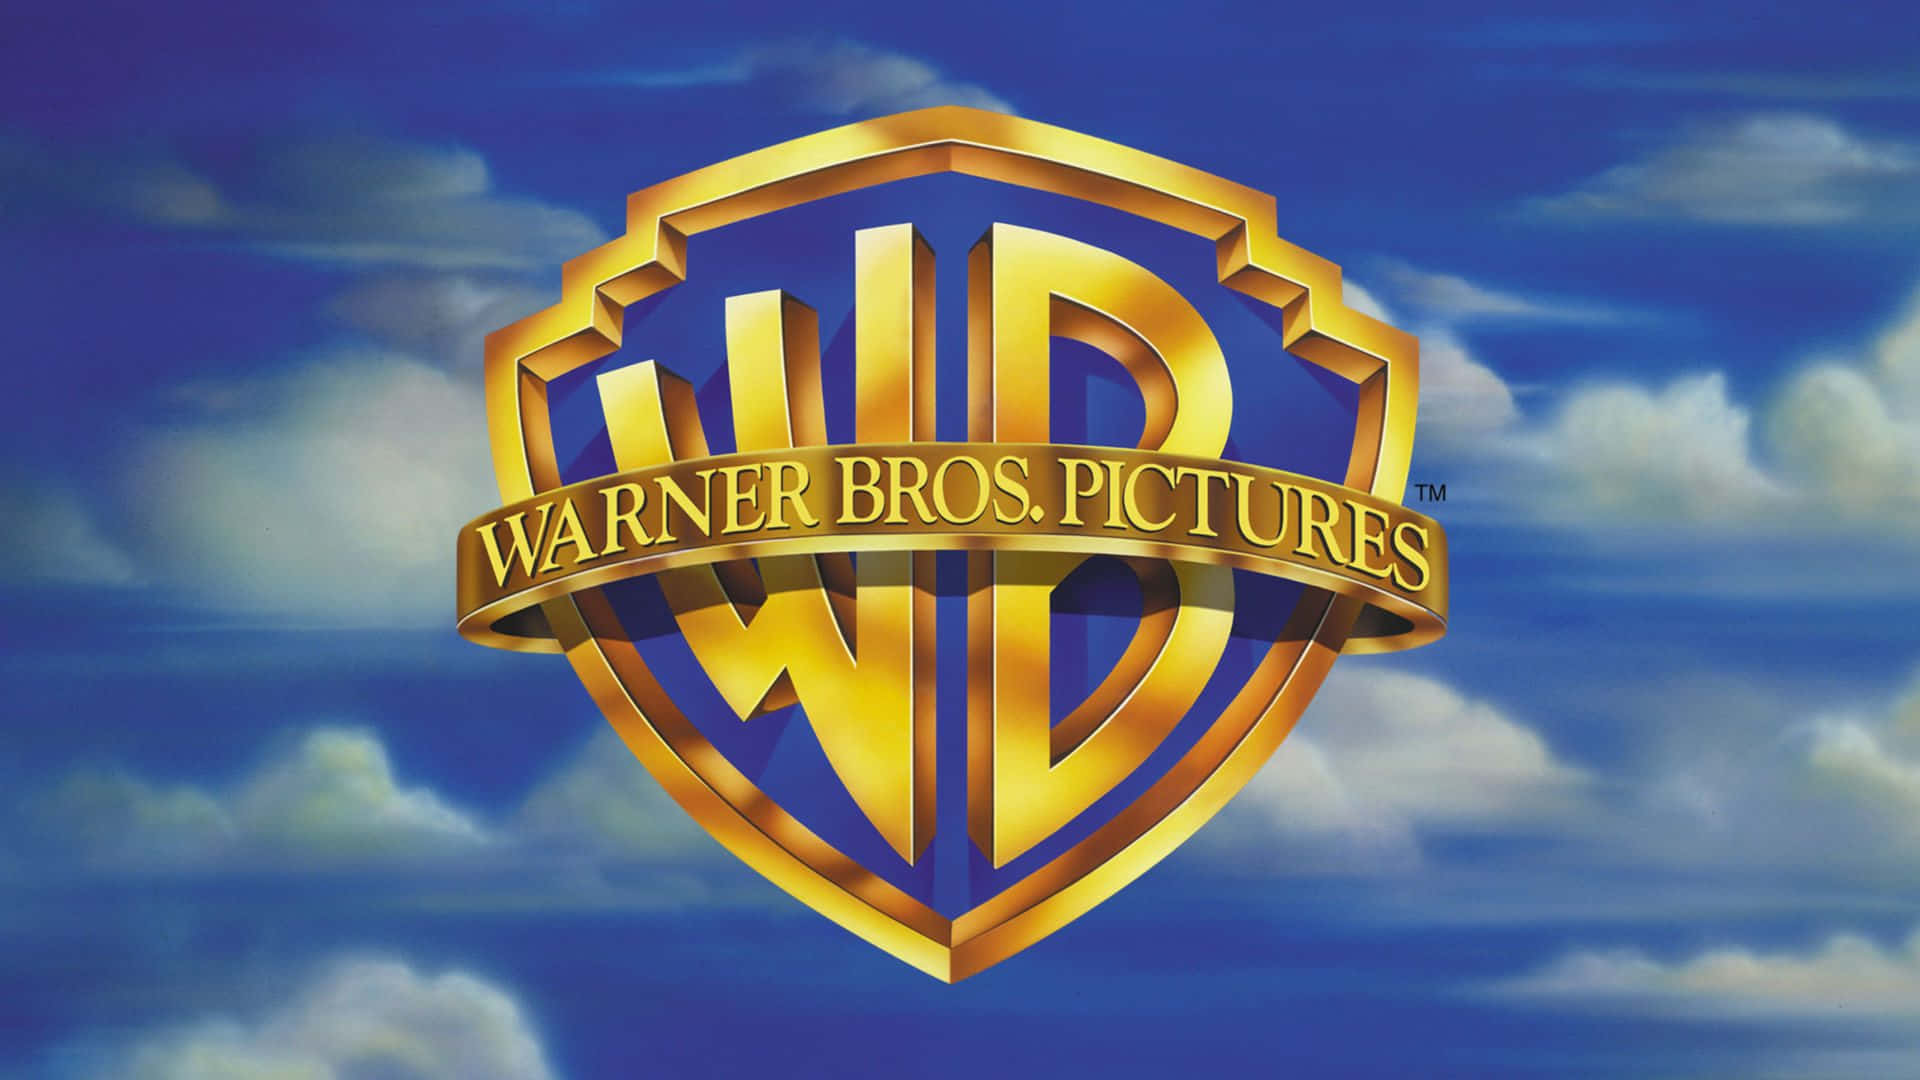 🤝 Warner Bros. обговорює з Paramount потенційне злиття